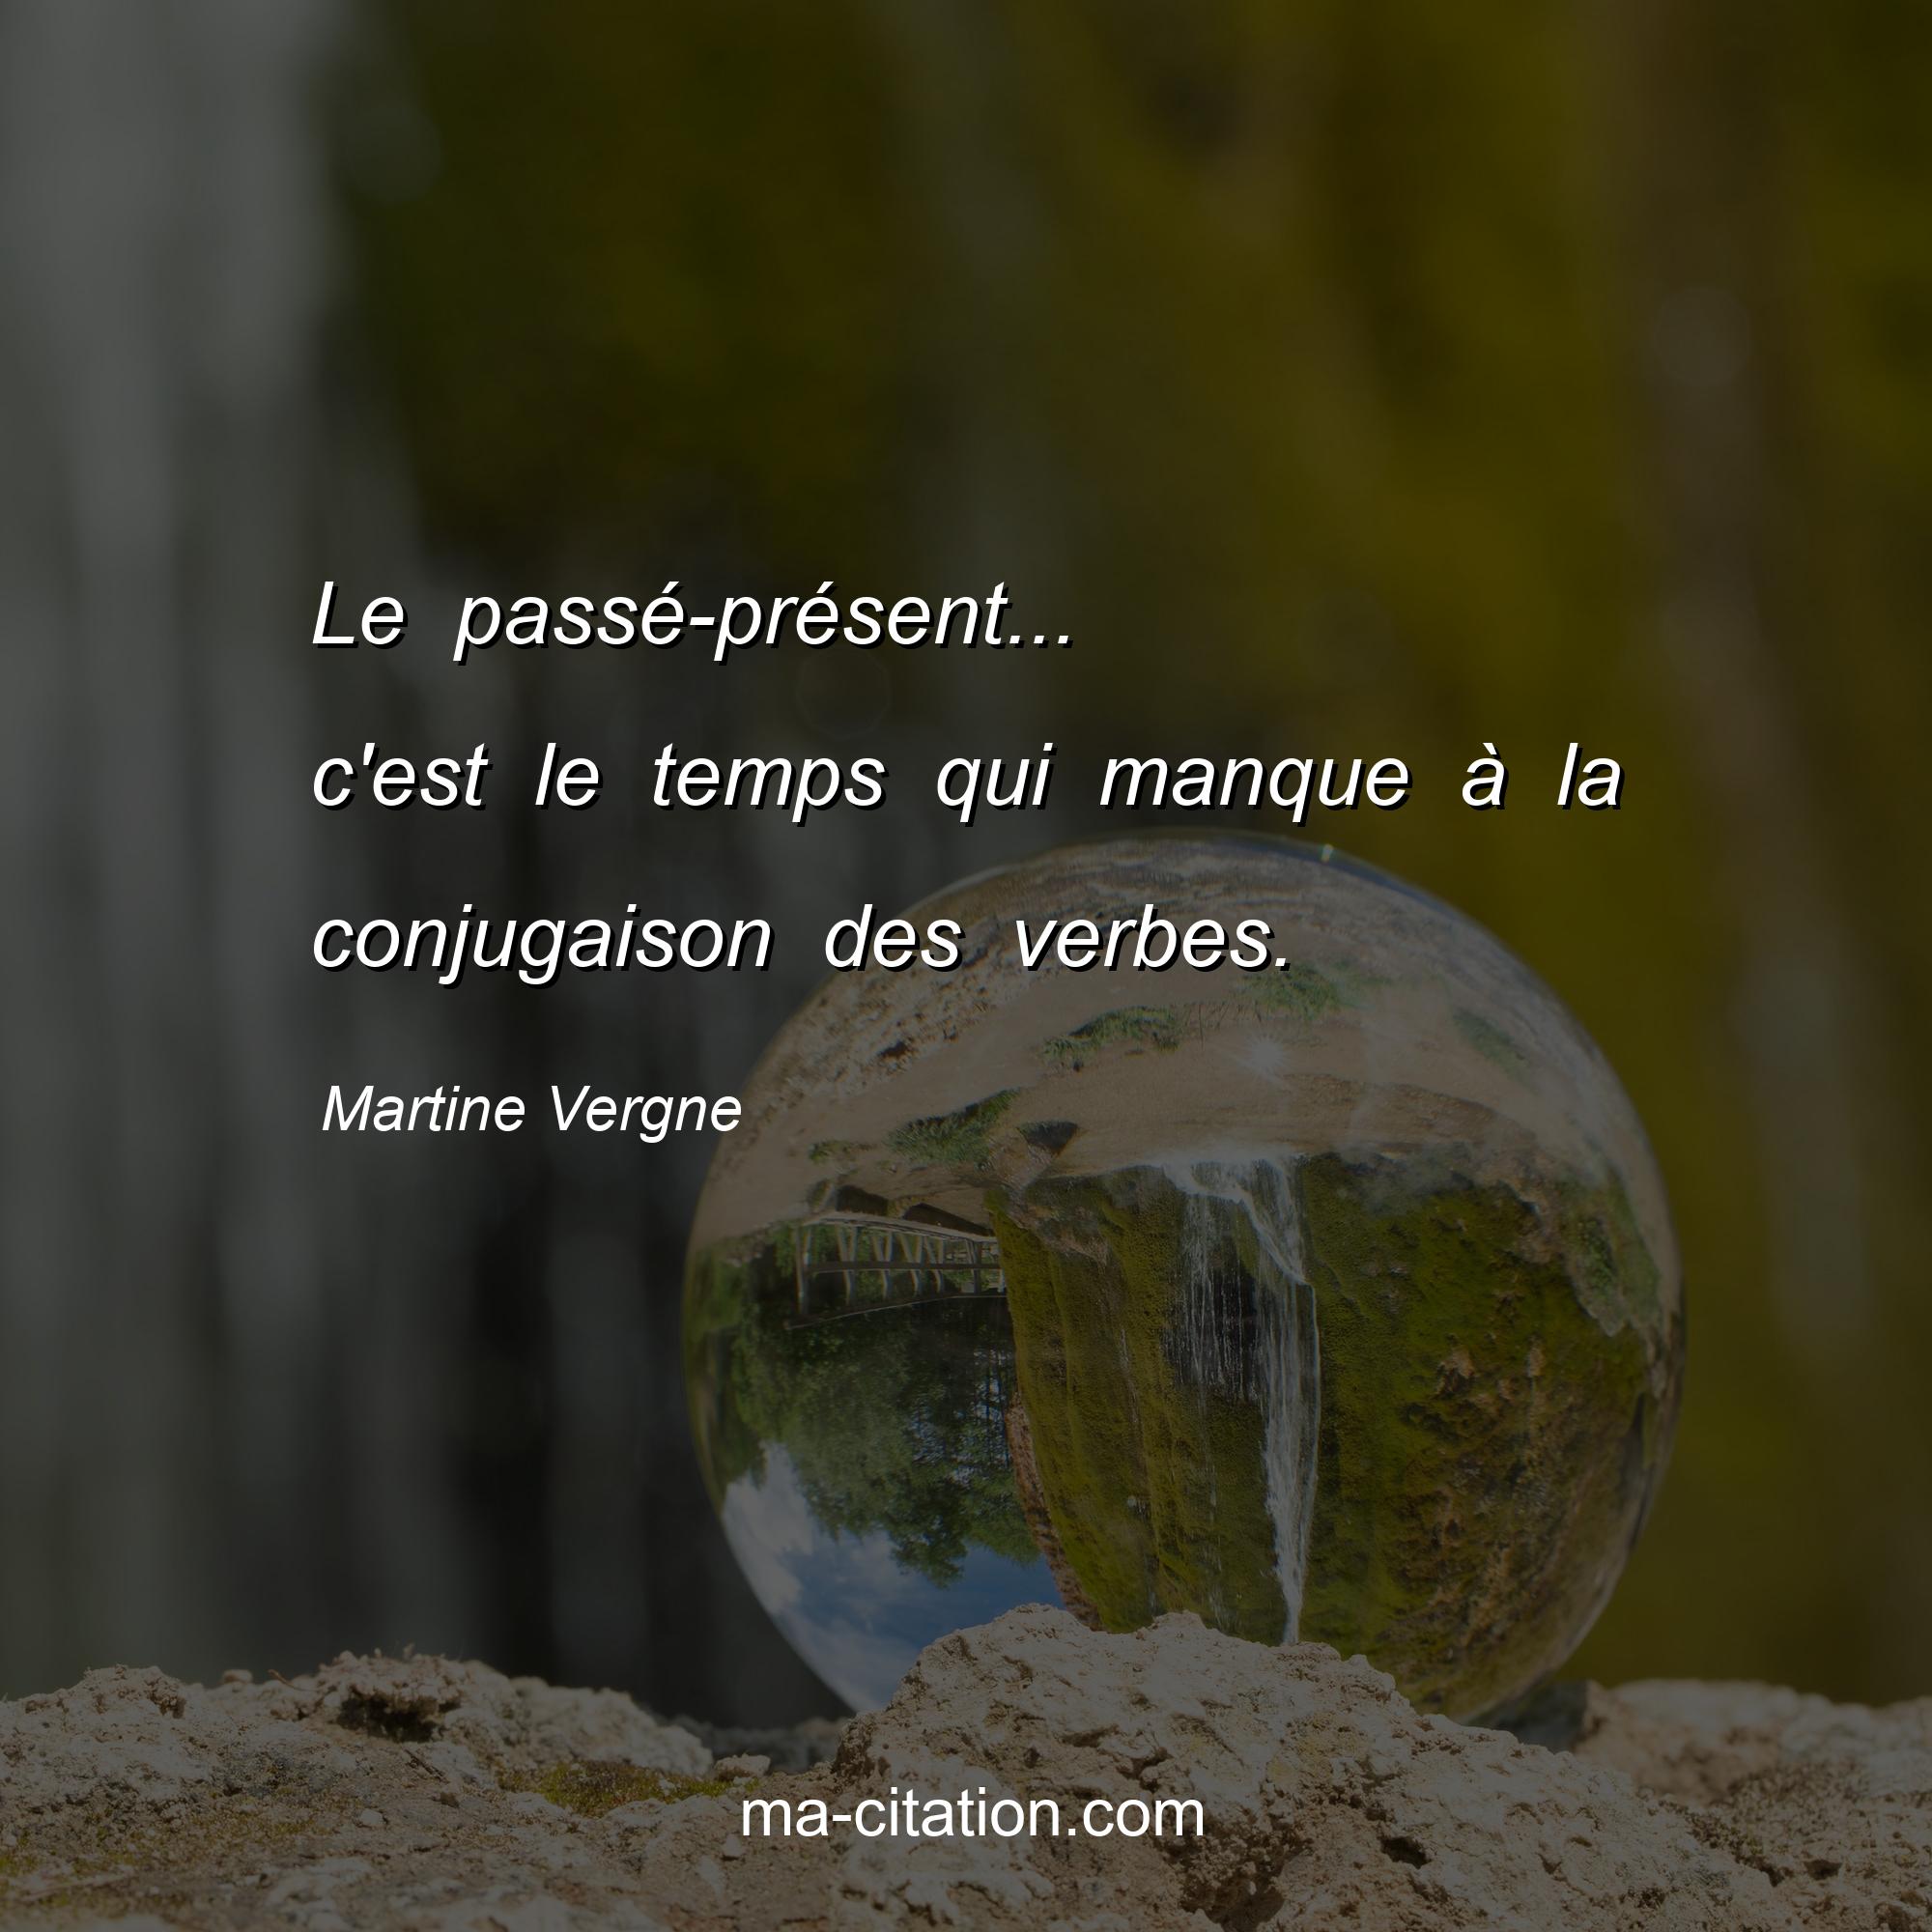 Martine Vergne : Le passé-présent... c'est le temps qui manque à la conjugaison des verbes.